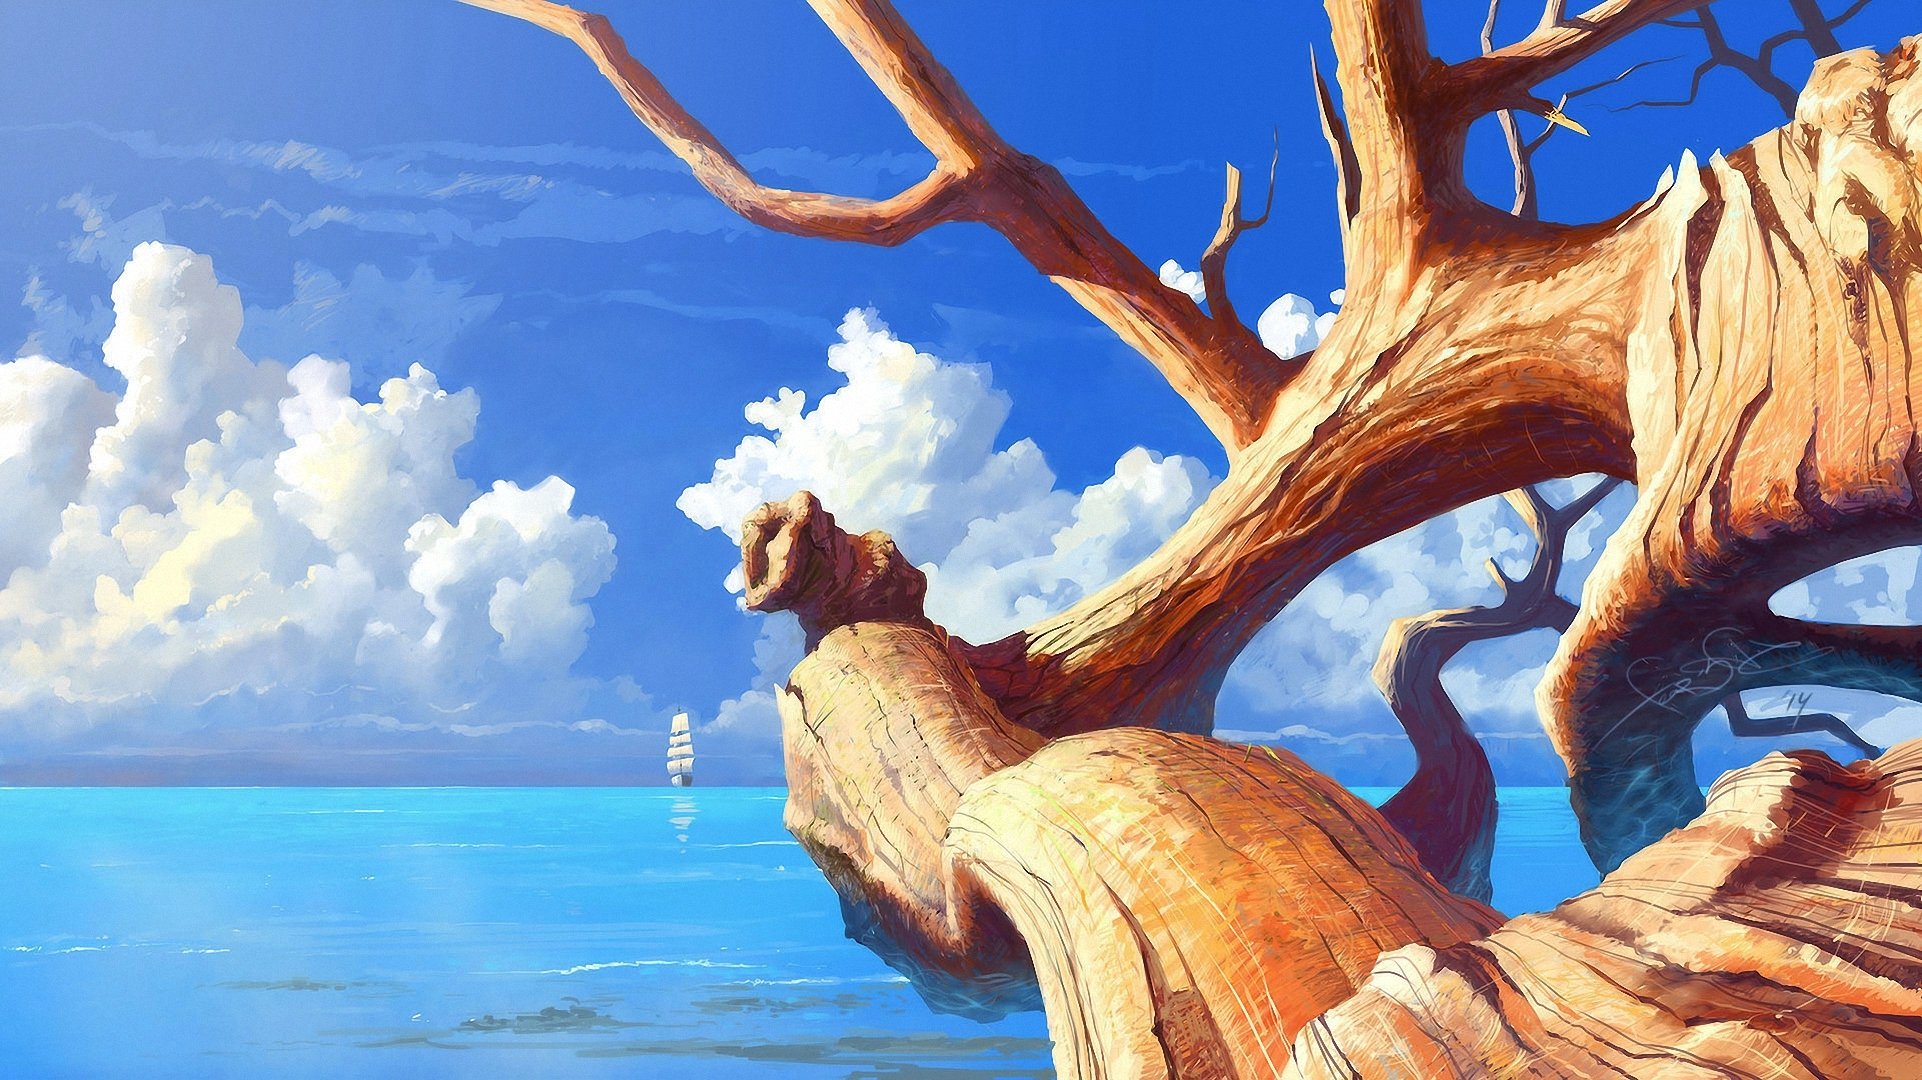 sztuka morze żaglówka statek słonecznie drzewo suchy pień gałęzie